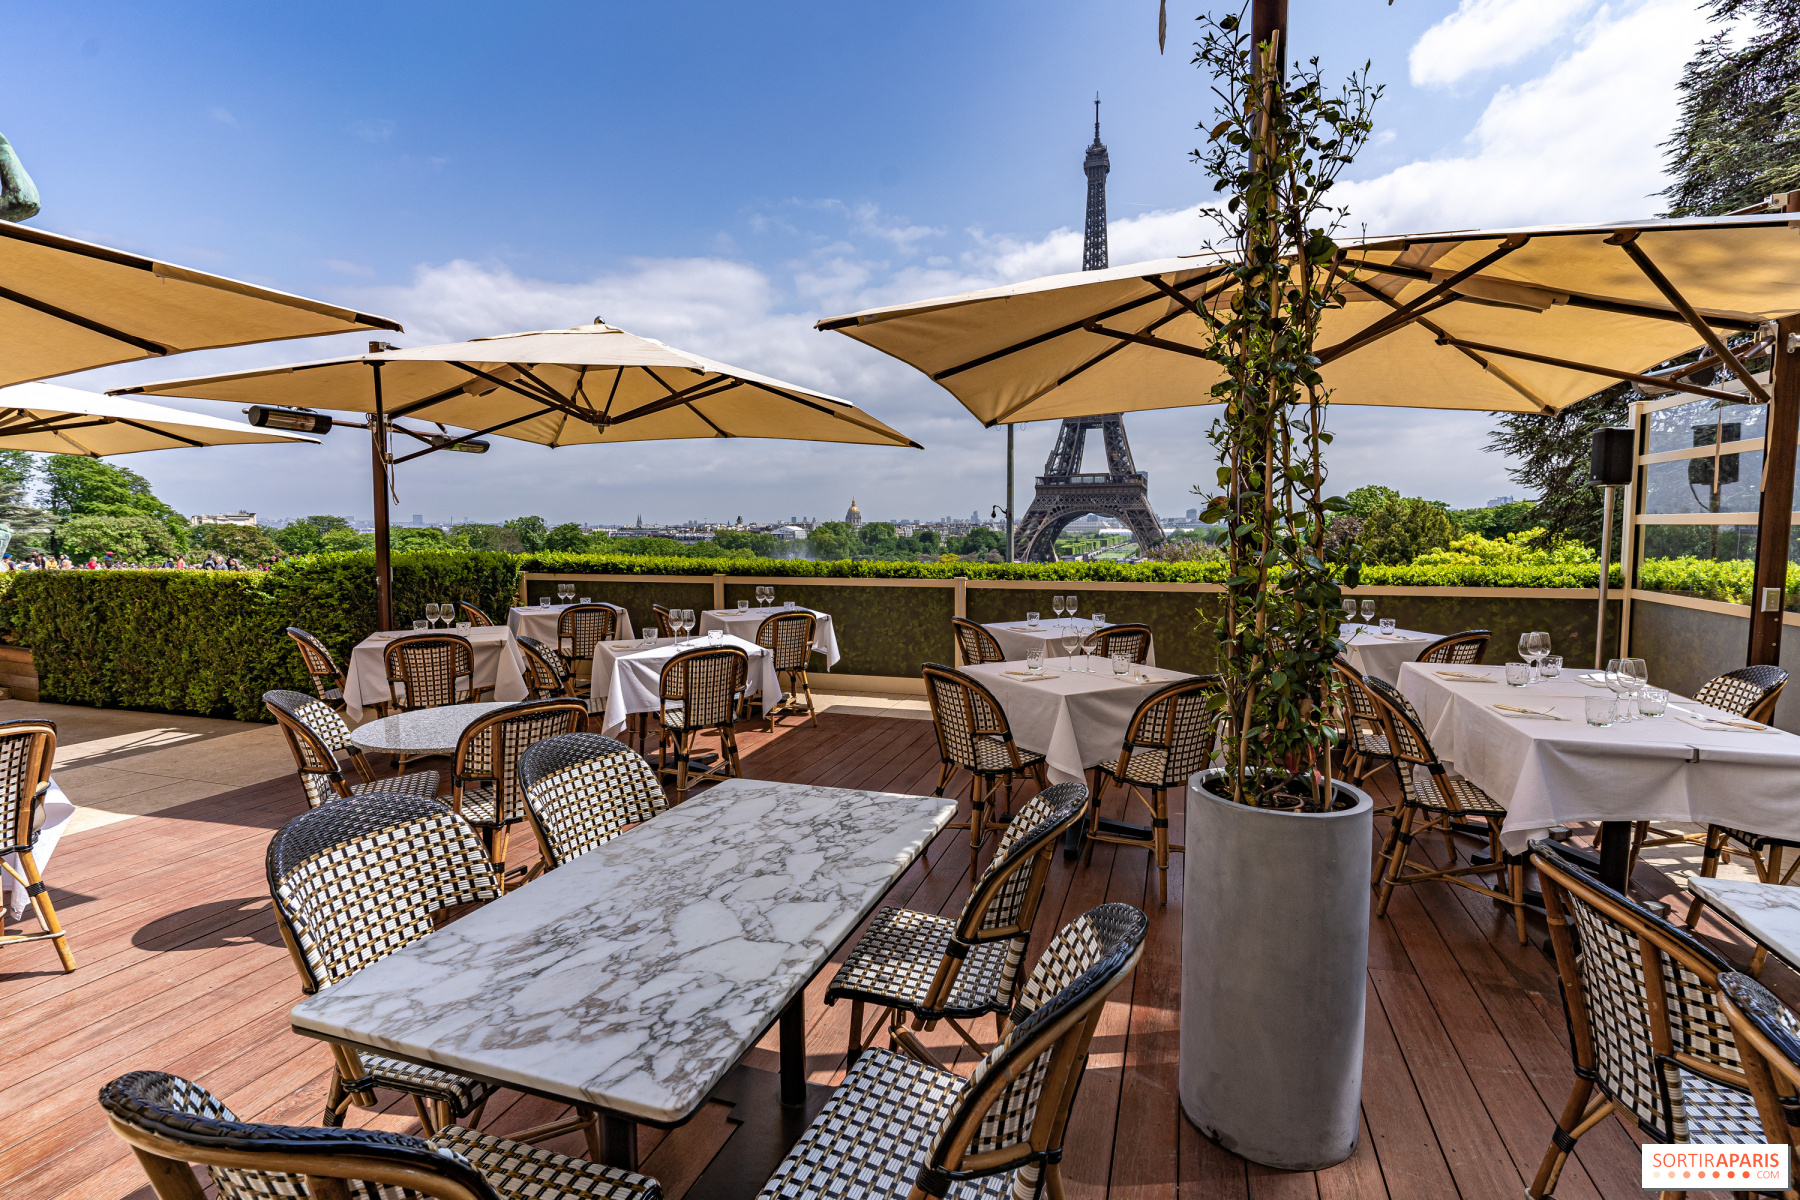 Café de l'Homme - Rooftop bar Paris  Paris restaurants, Paris hotels, Paris  rooftops